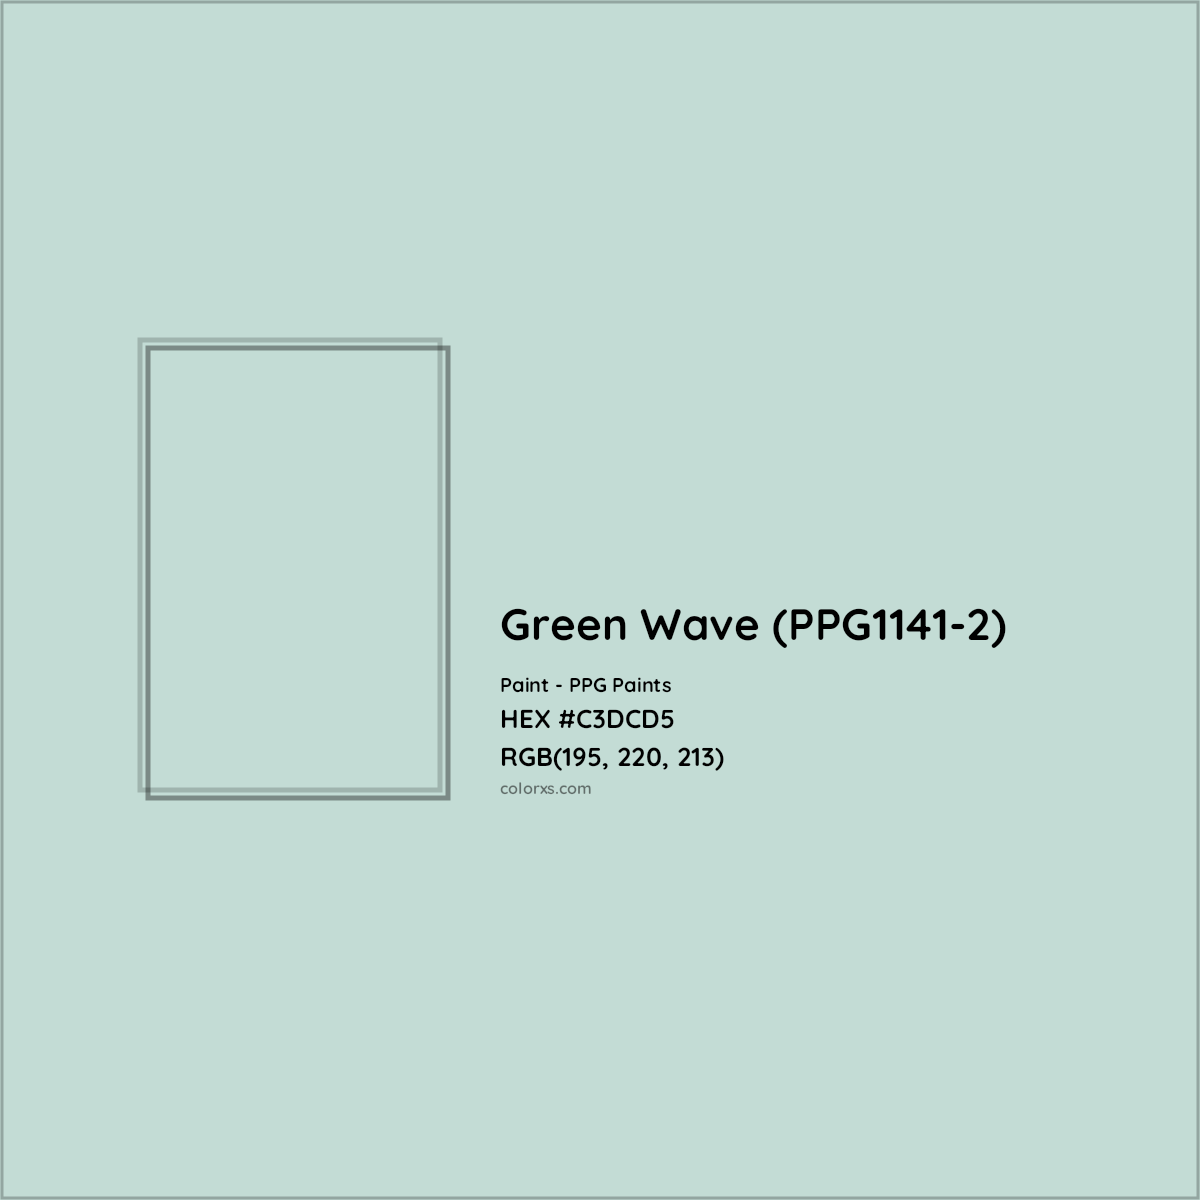 HEX #C3DCD5 Green Wave (PPG1141-2) Paint PPG Paints - Color Code